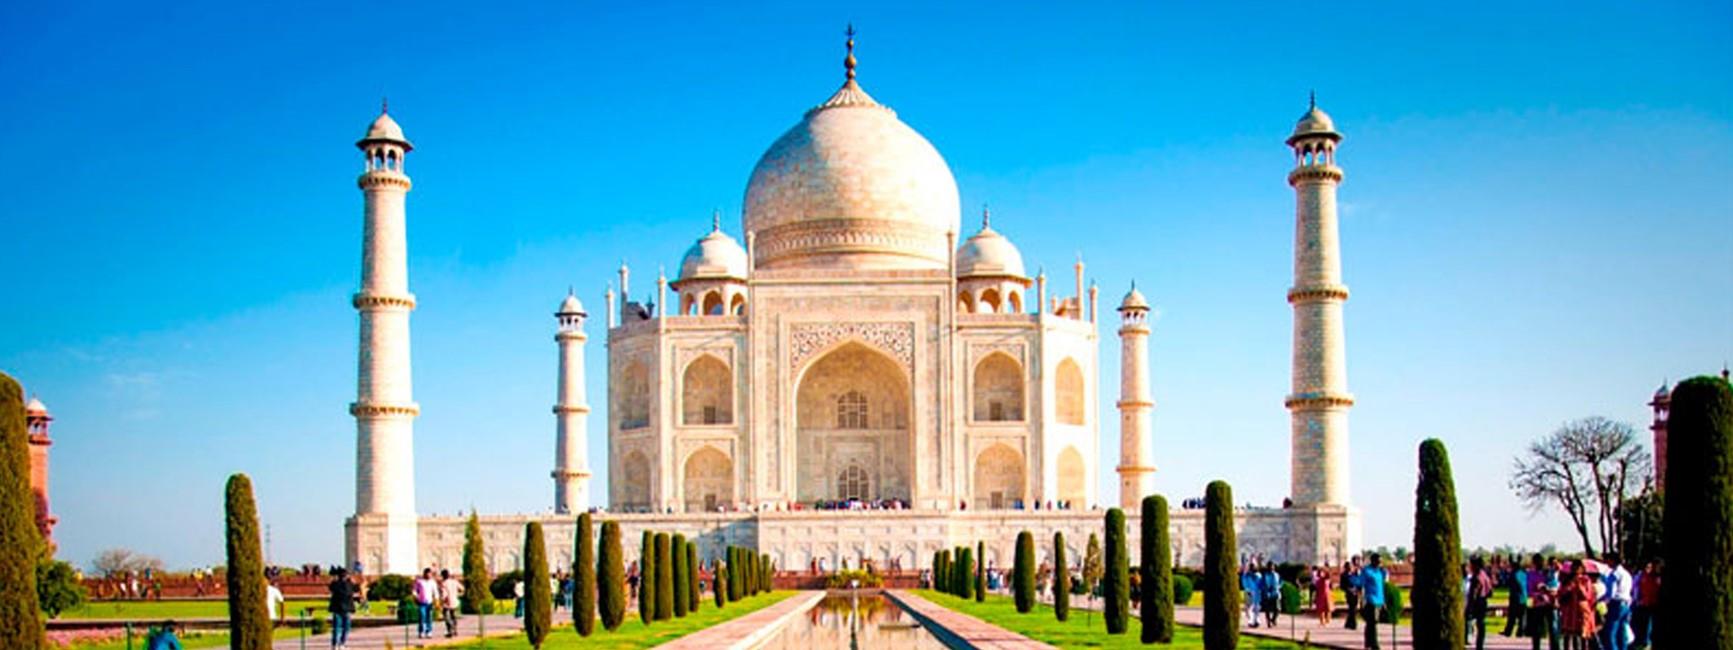 Excursion-Taj-Mahal-en-Gatimaan-Express-1